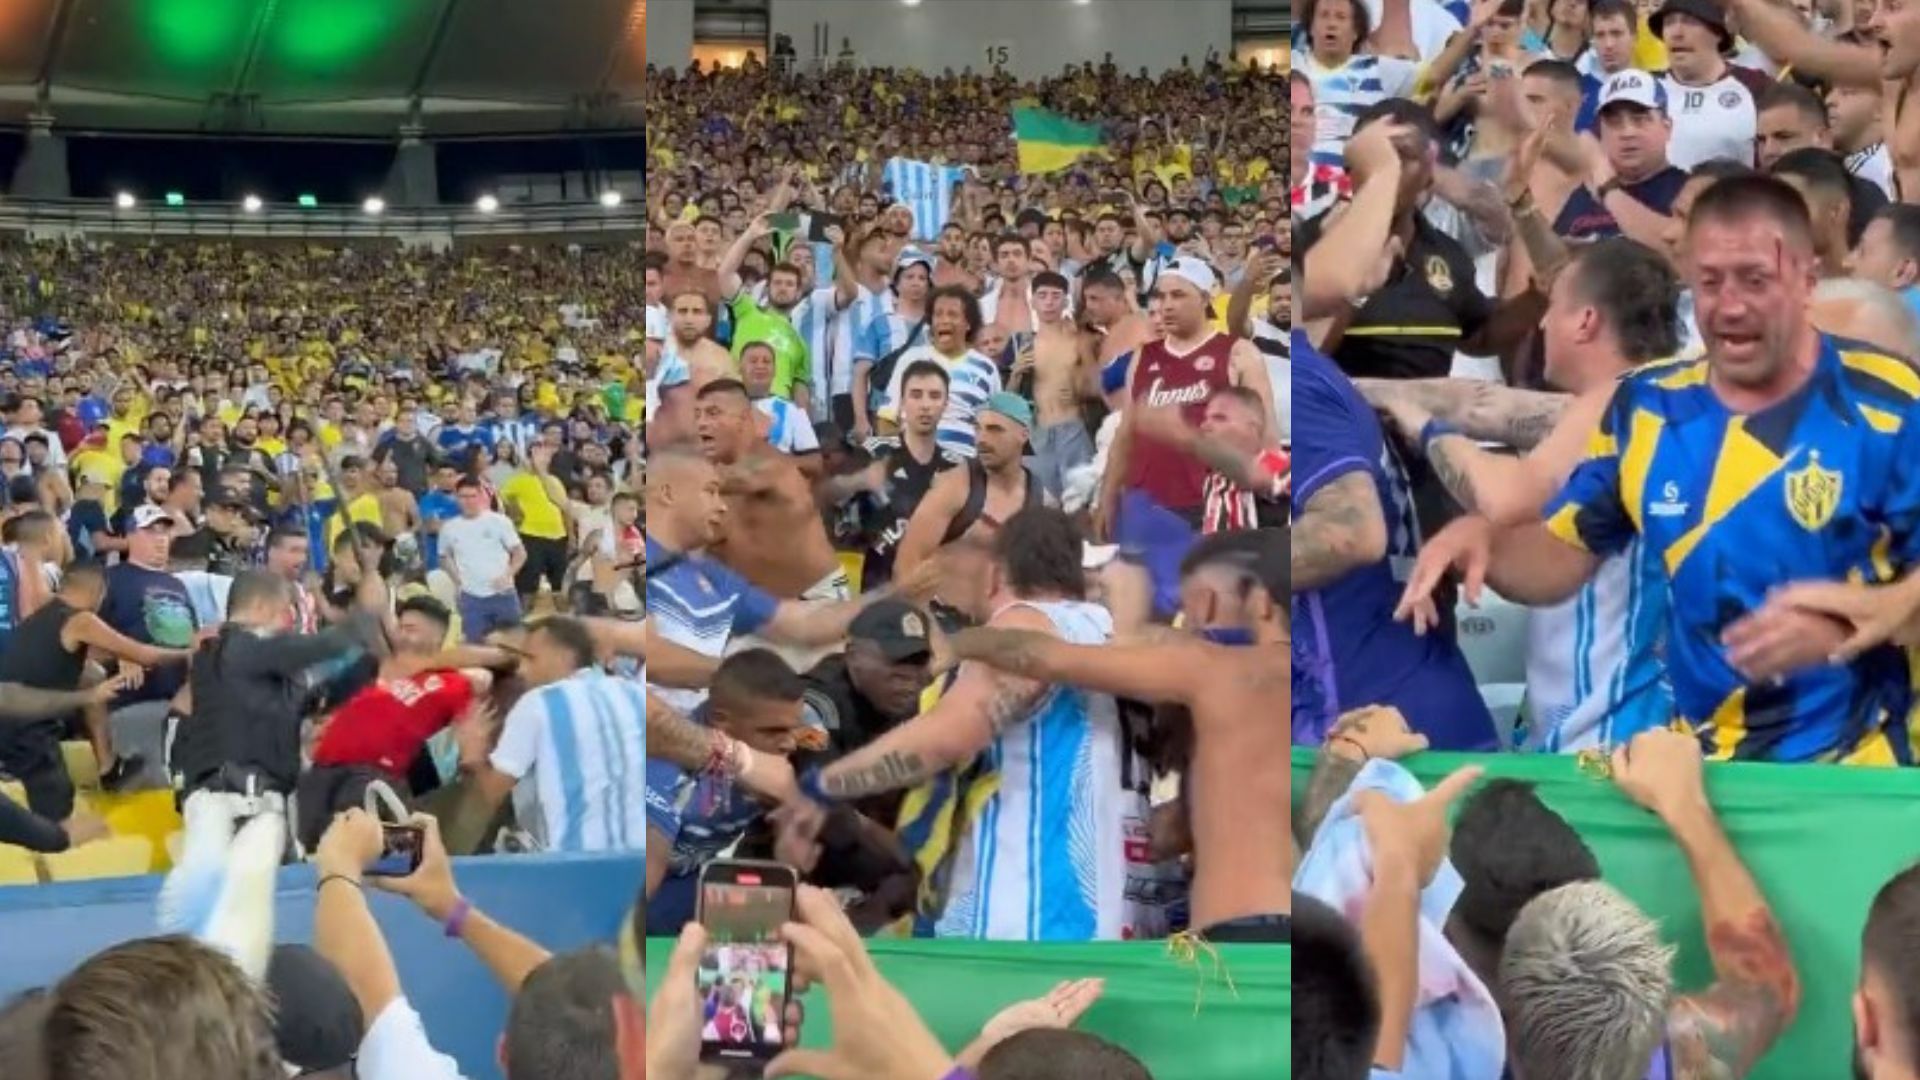 VIDEO: Fuertes imágenes de la riña de los aficionados durante el Brasil Vs. Argentina